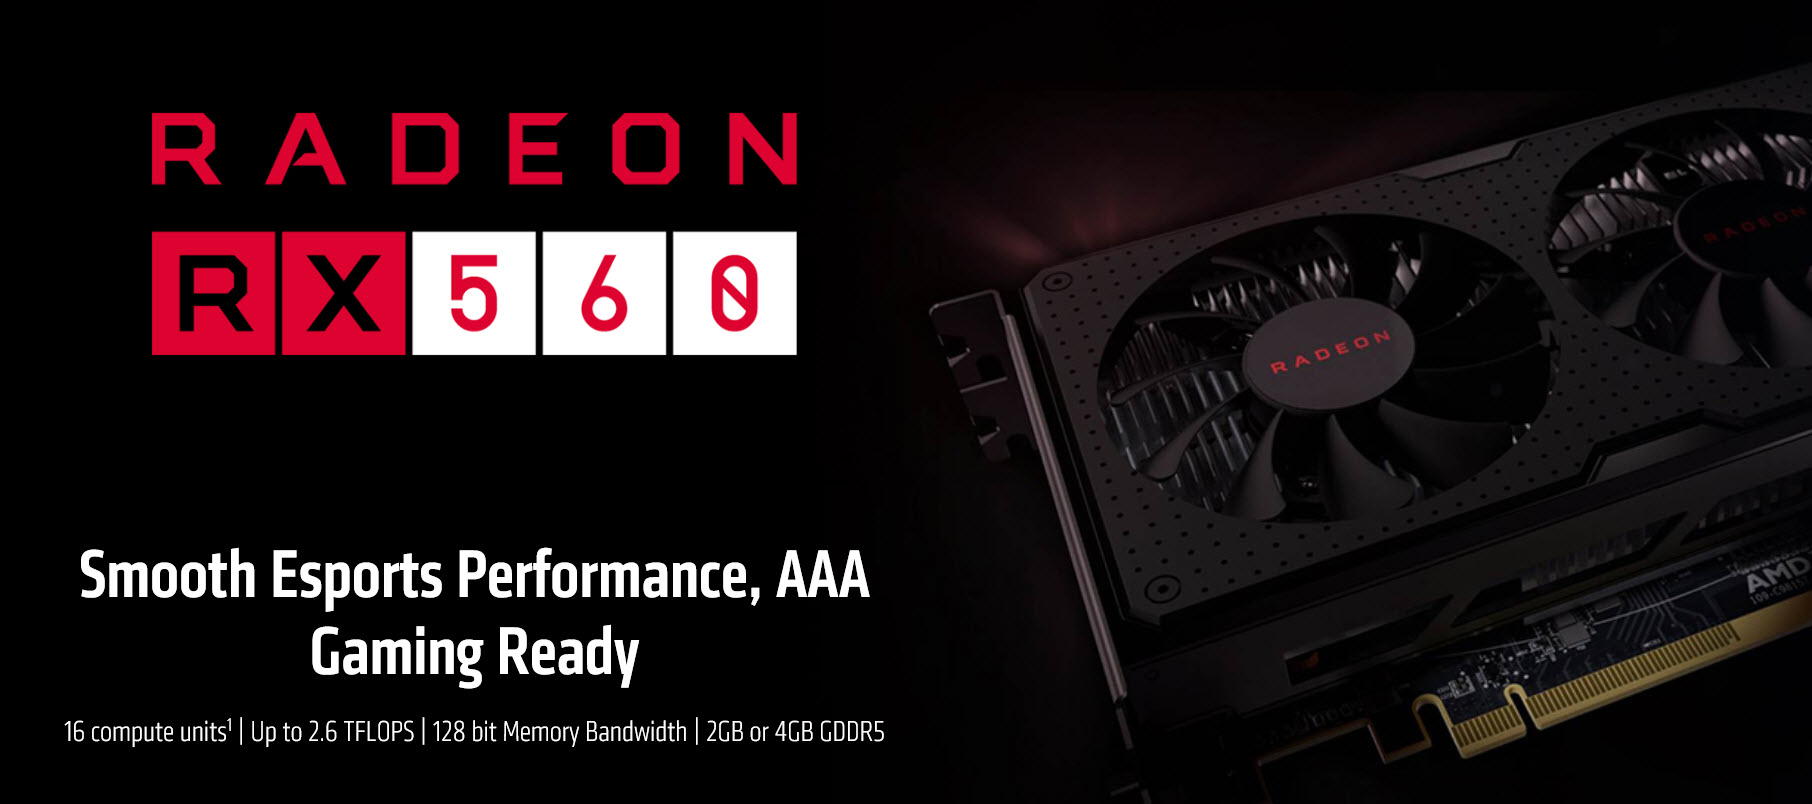 2017 12 07 10 36 04 AMD ชี้แจงแล้วขอโทษที่ทำให้เข้าใจผิด โดยสเปควางจำหน่ายมีสองรุ่นคือ RX 560 และ RX 560D ทั้งสองรุ่นที่มีจำนวนคอร์ 896 SP และ 1024 SP นั่นเอง 